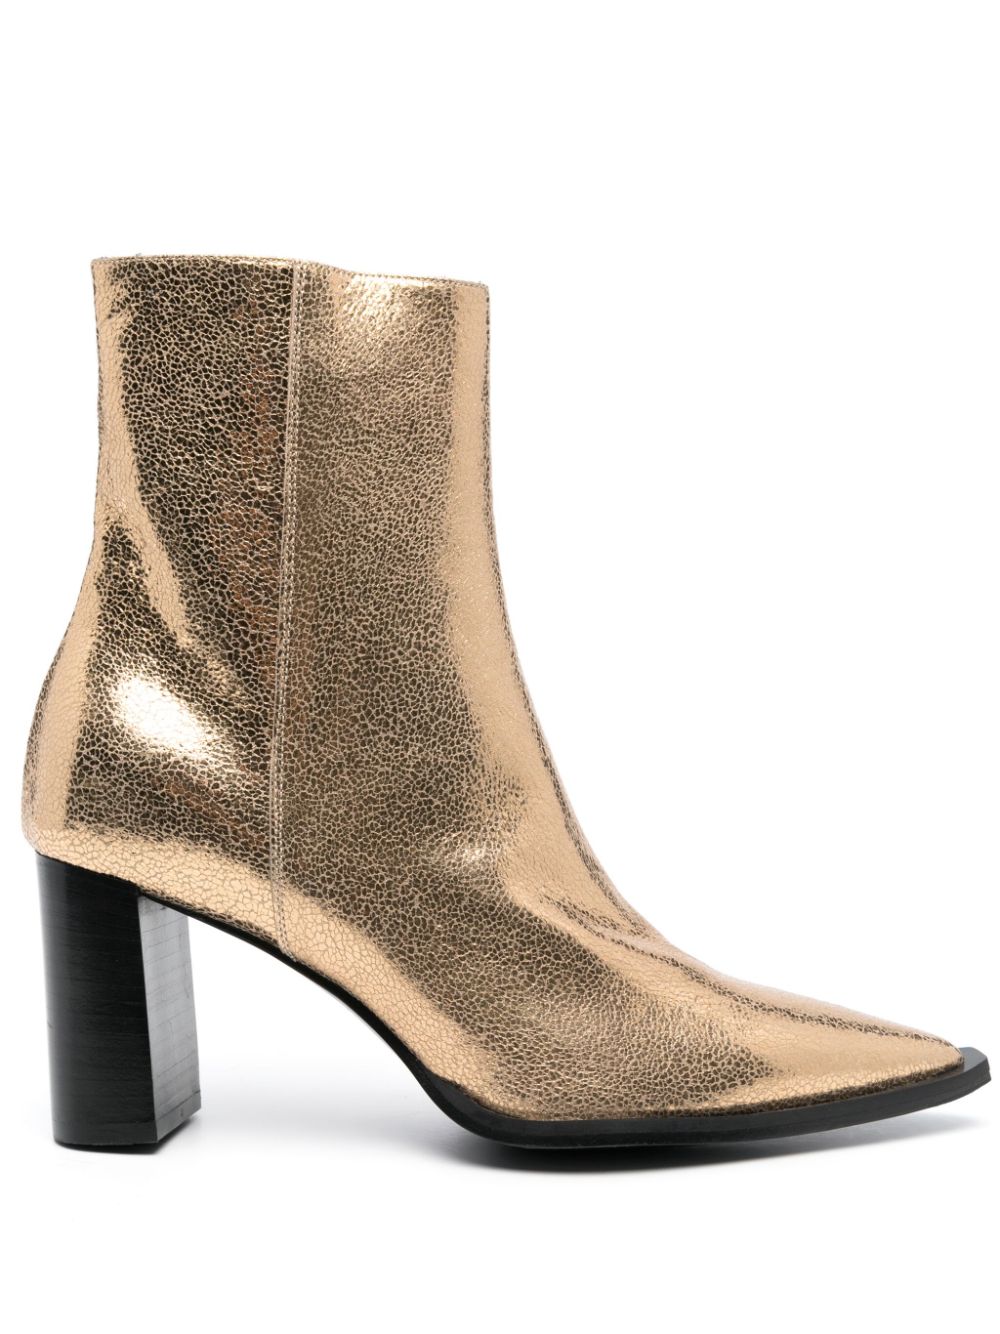 Dorothee Schumacher 70mm metallic-effect leather boots - Gold von Dorothee Schumacher